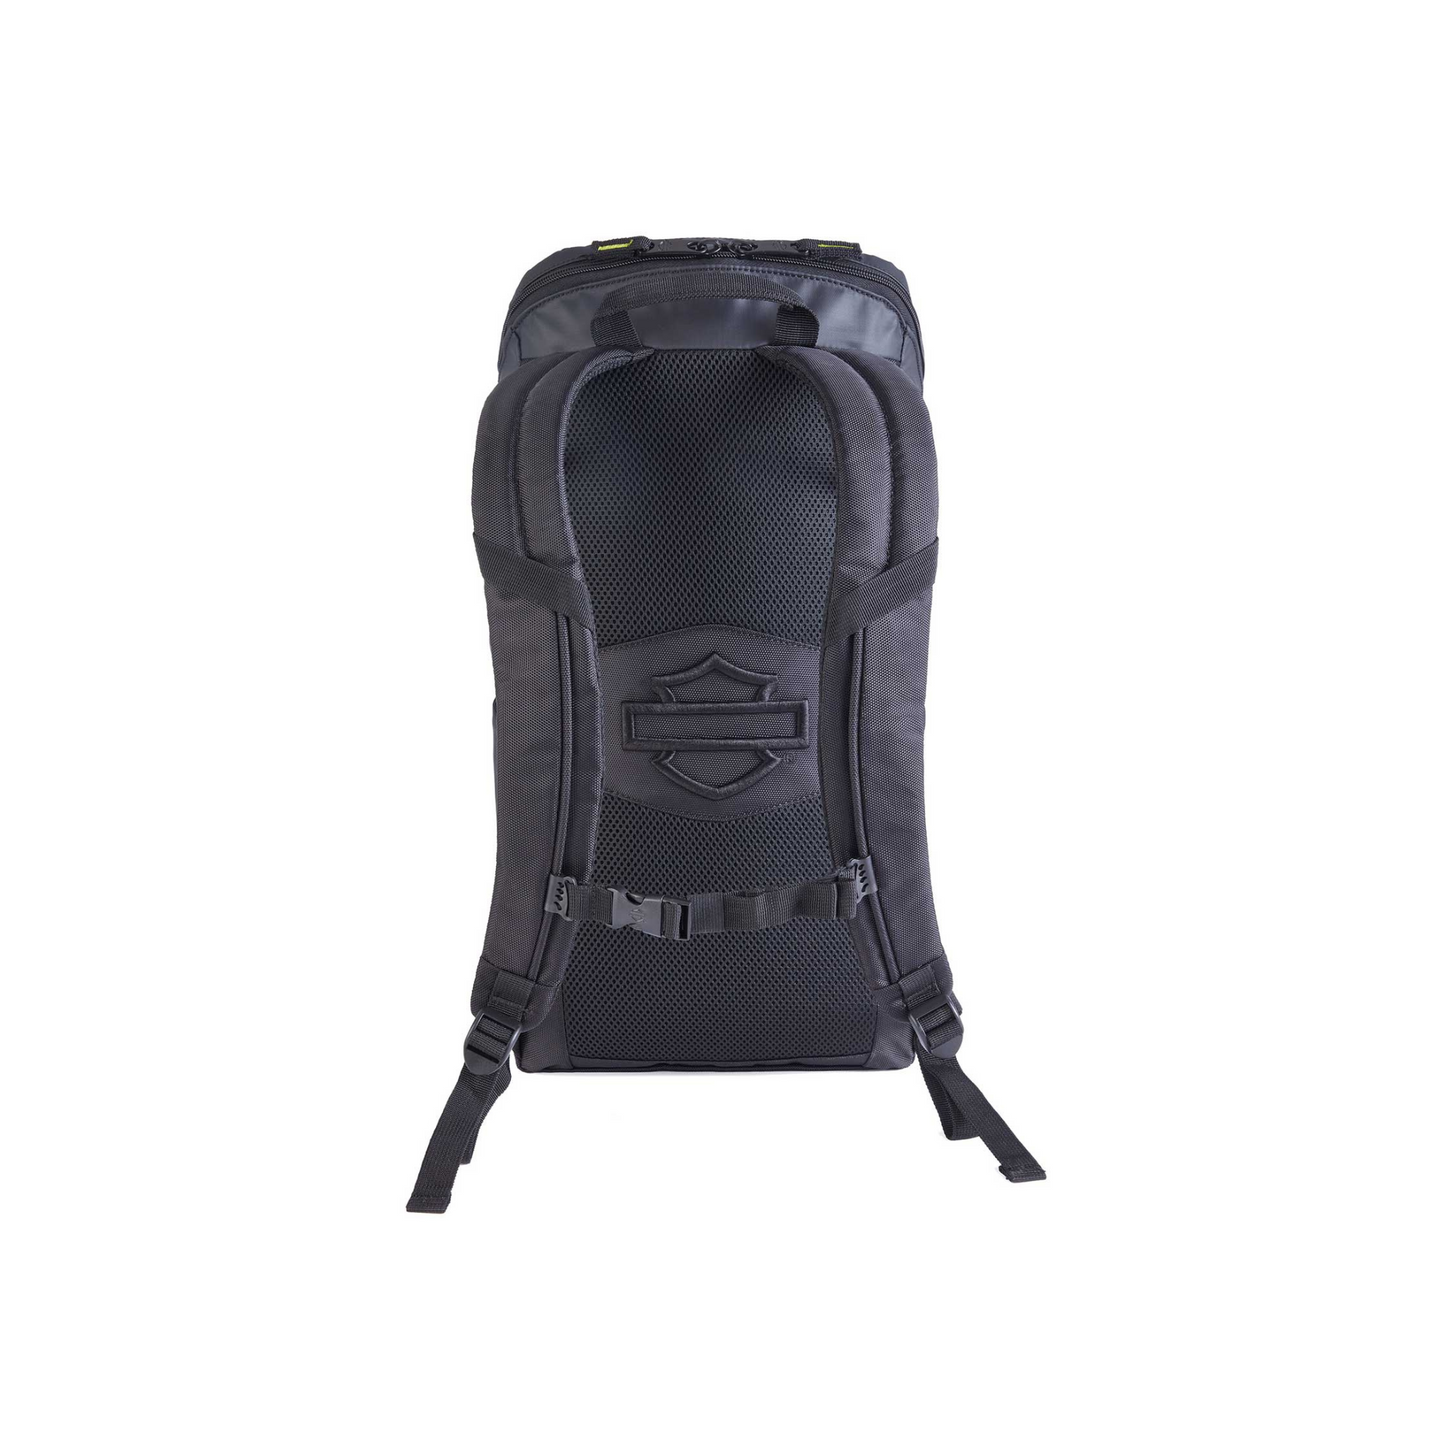 Harley-Davidson® Nomad Lightweight Water-Resistant Backpack - Black/Lime